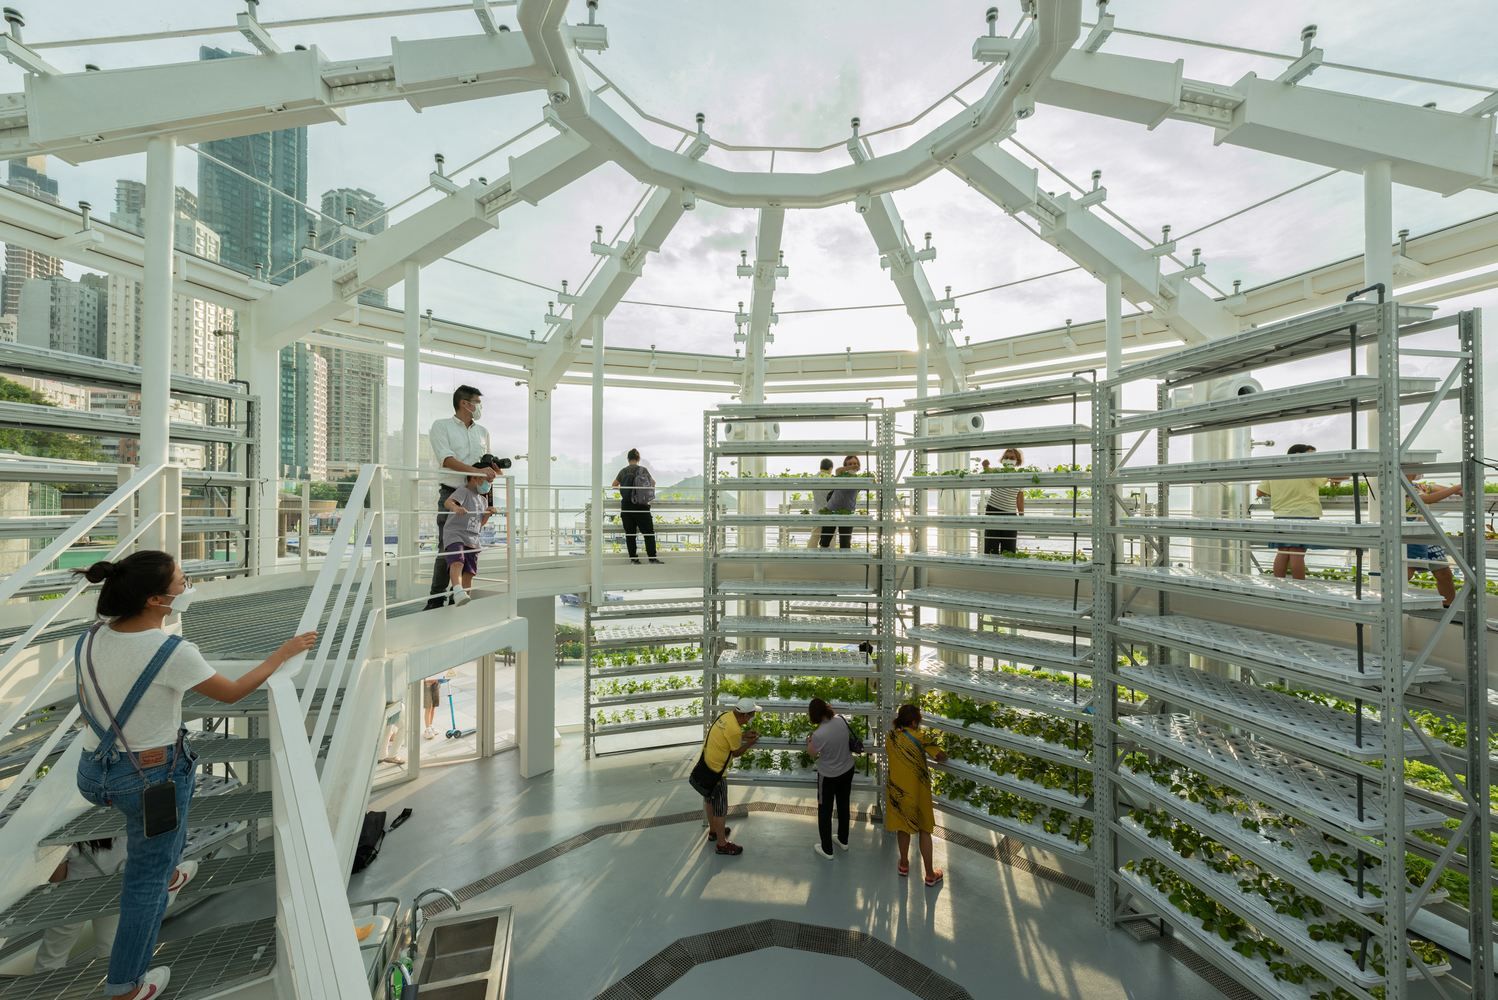 Космічна теплиця із зеленню: в Гонконзі створили унікальний проєкт для міського садівництва